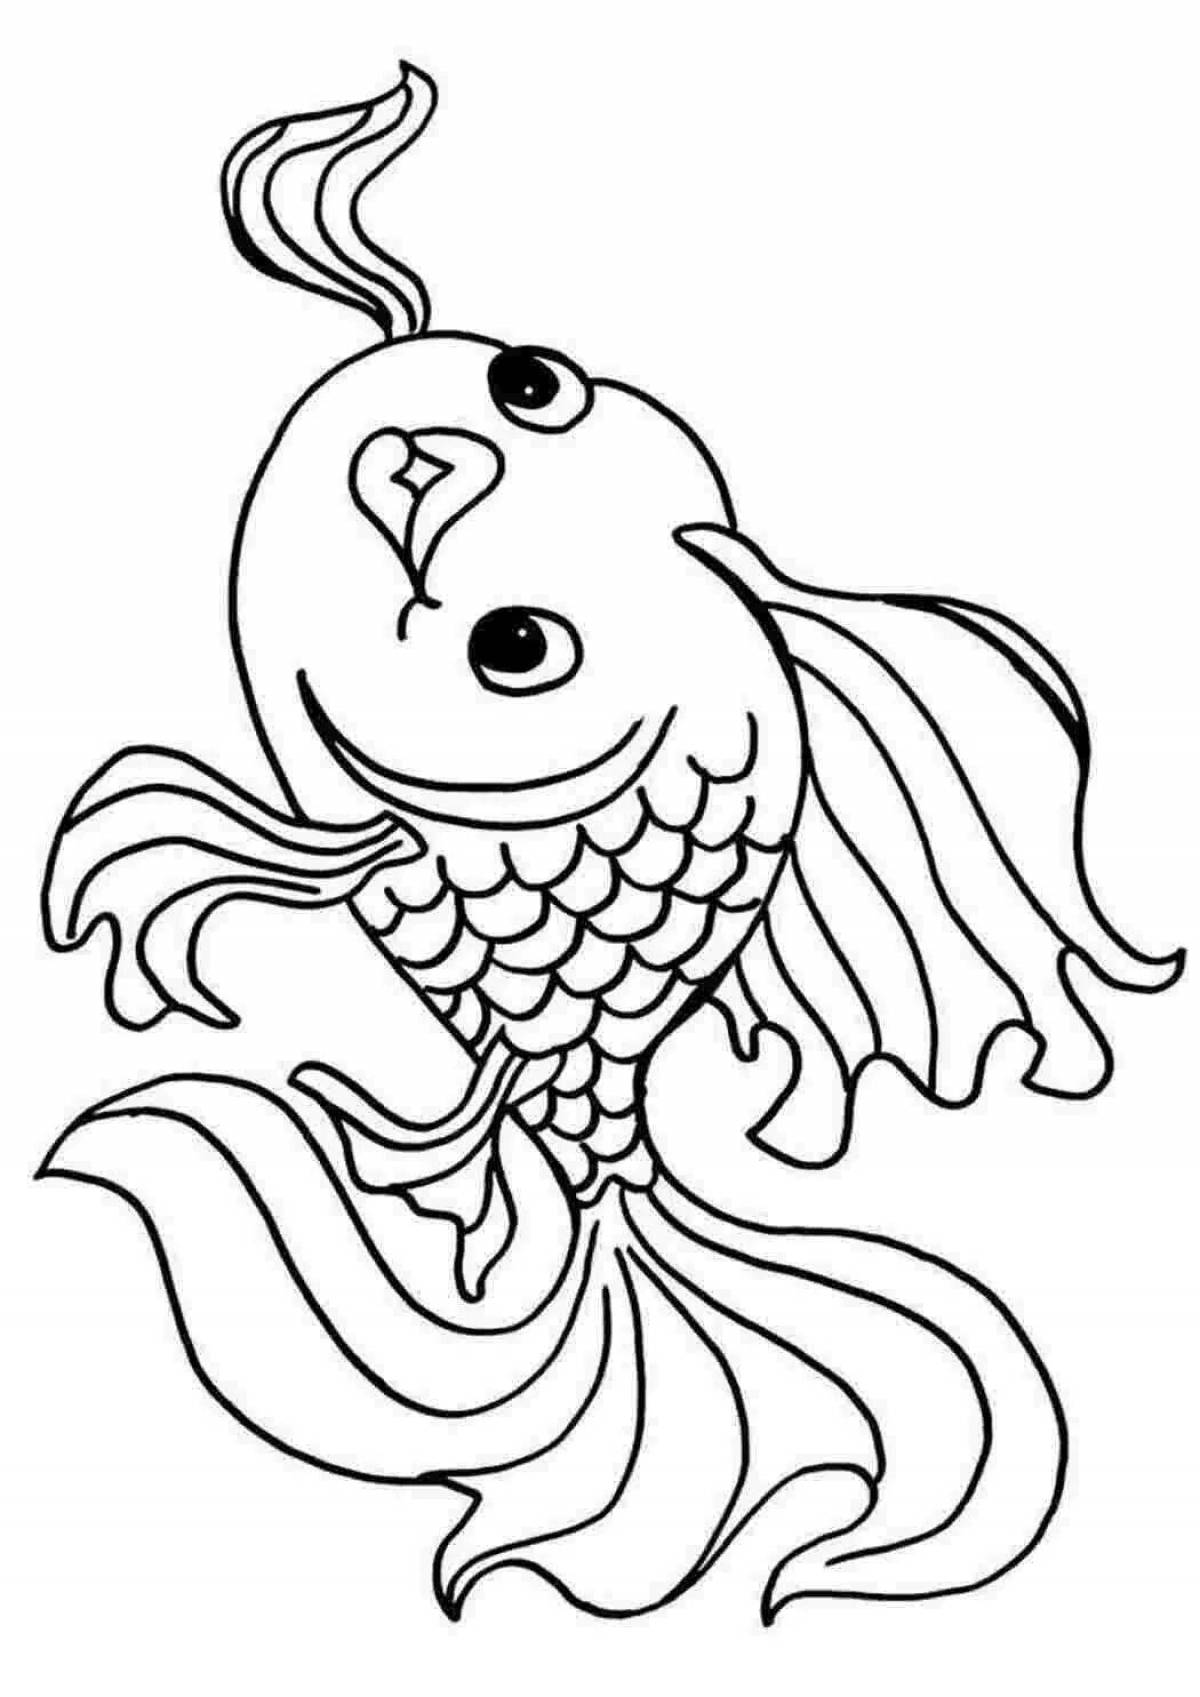 Великолепный рисунок золотой рыбки